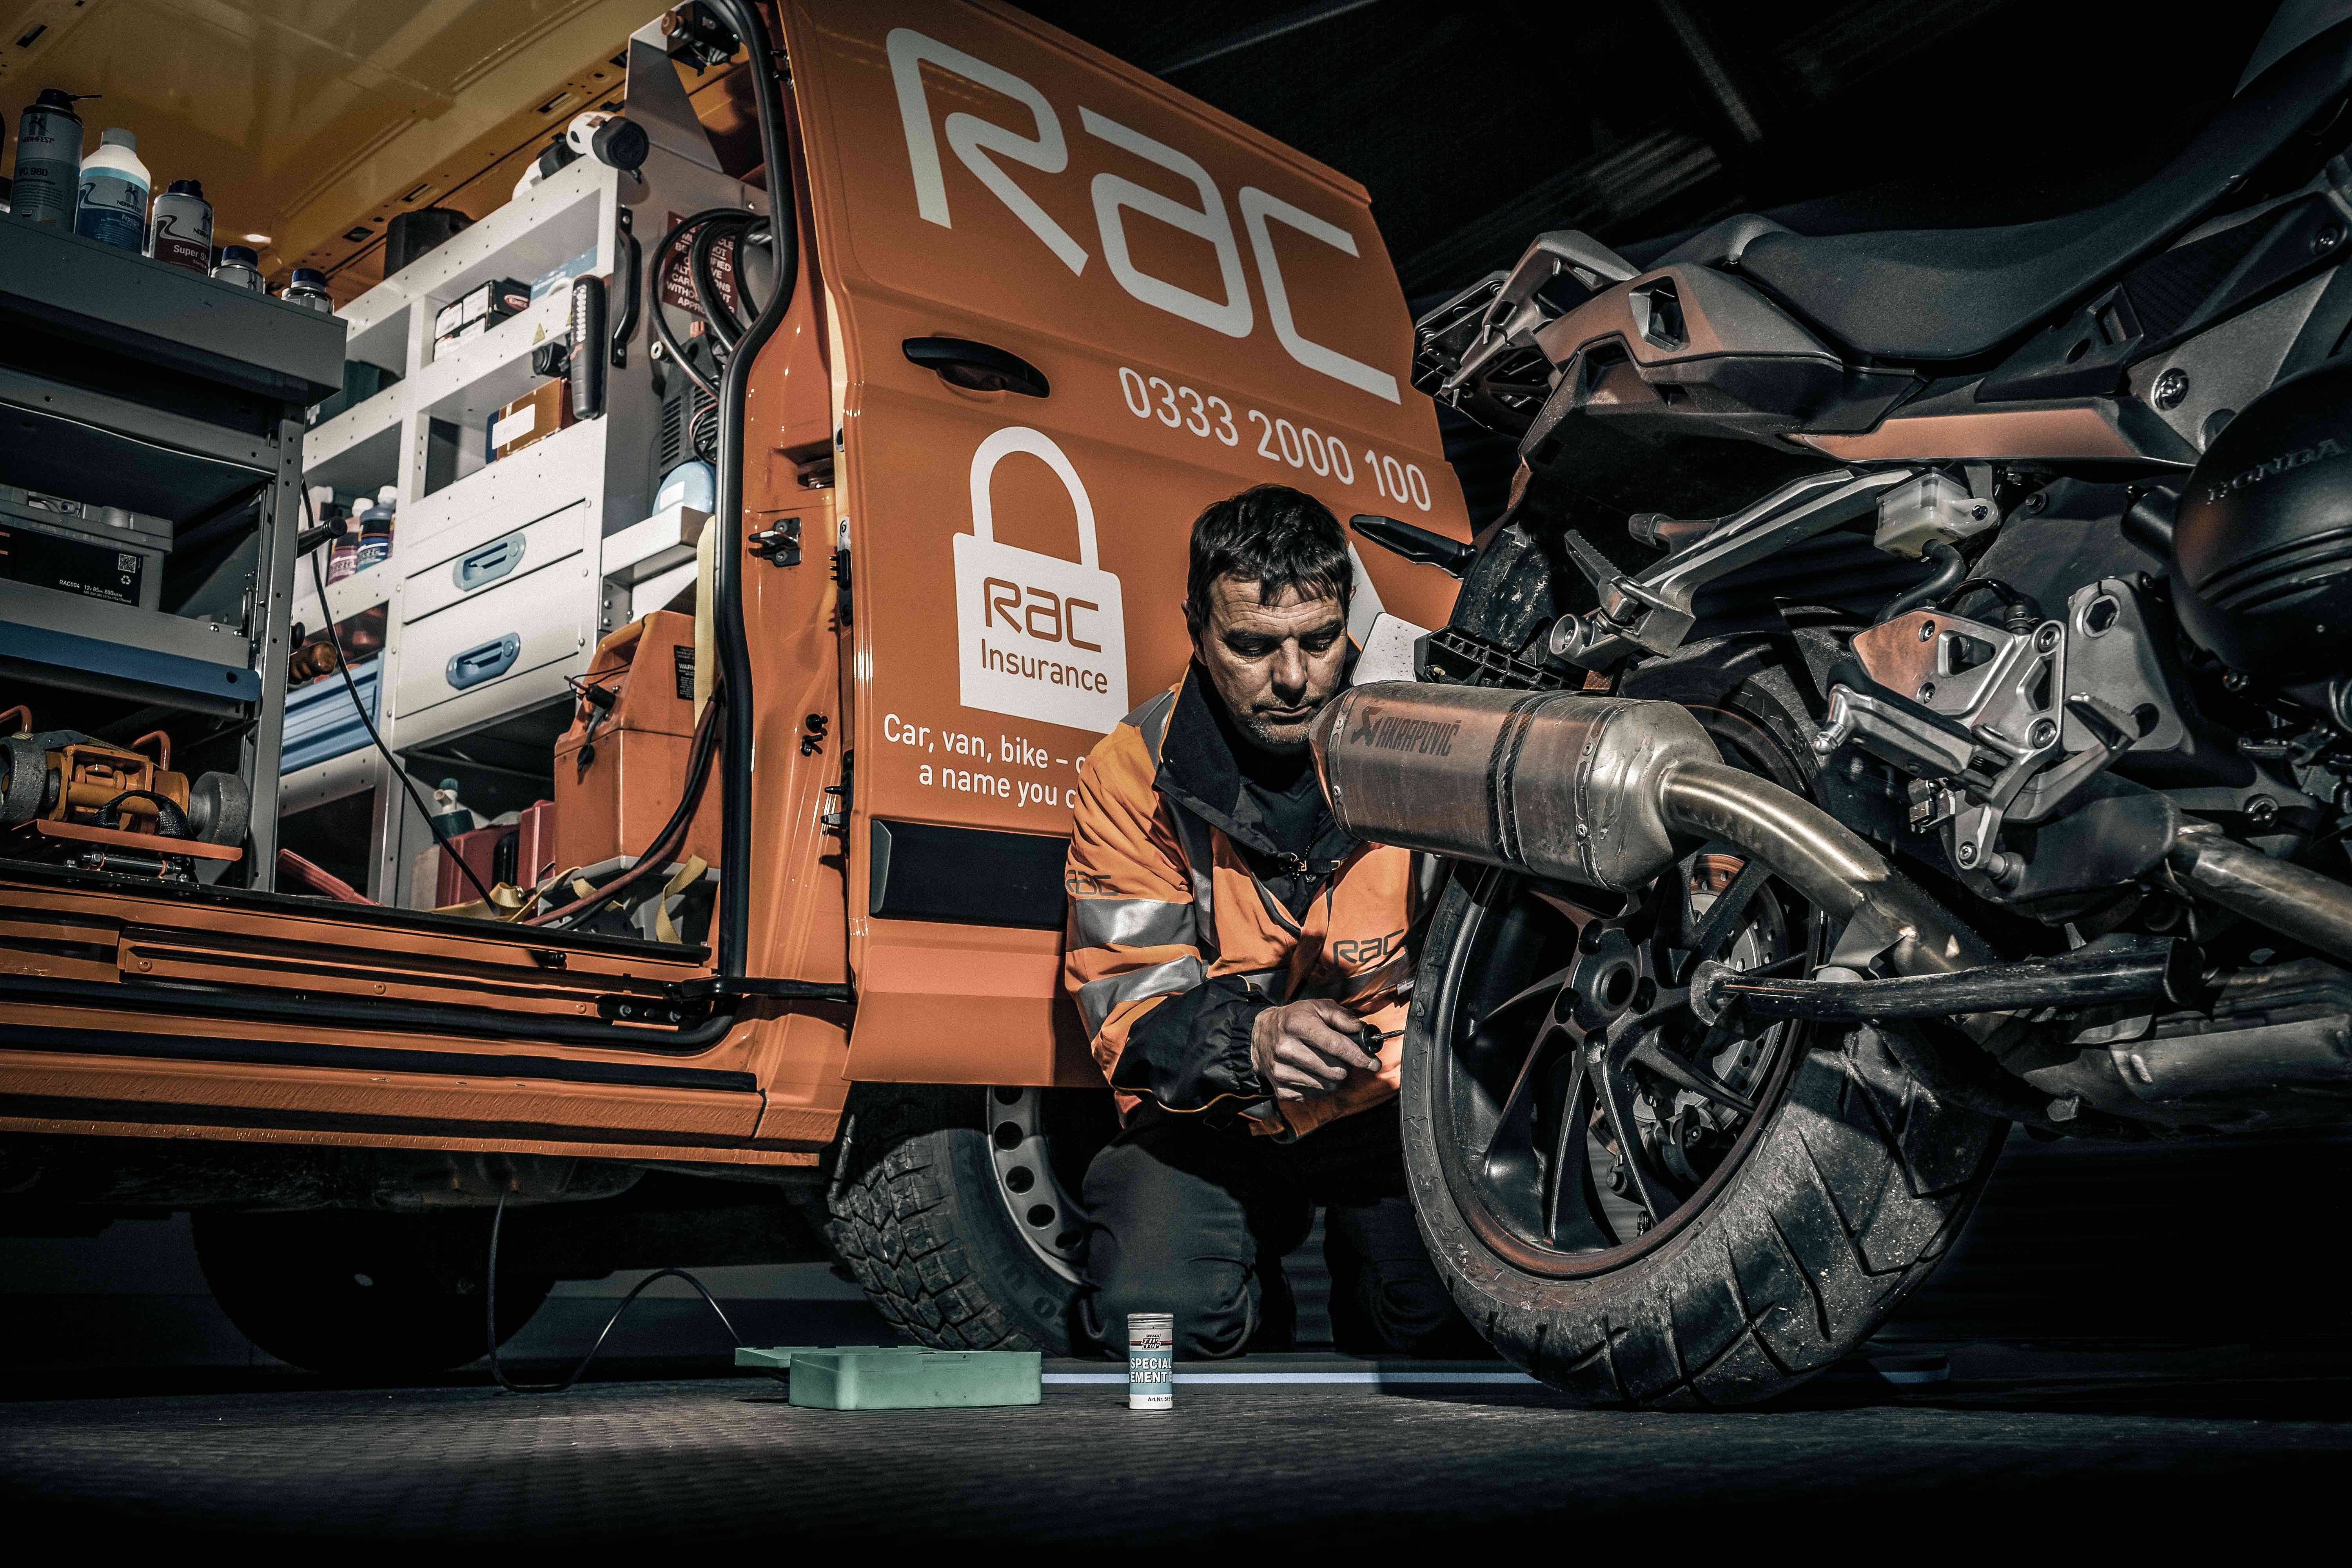 RAC van with man repairing a motorcycle